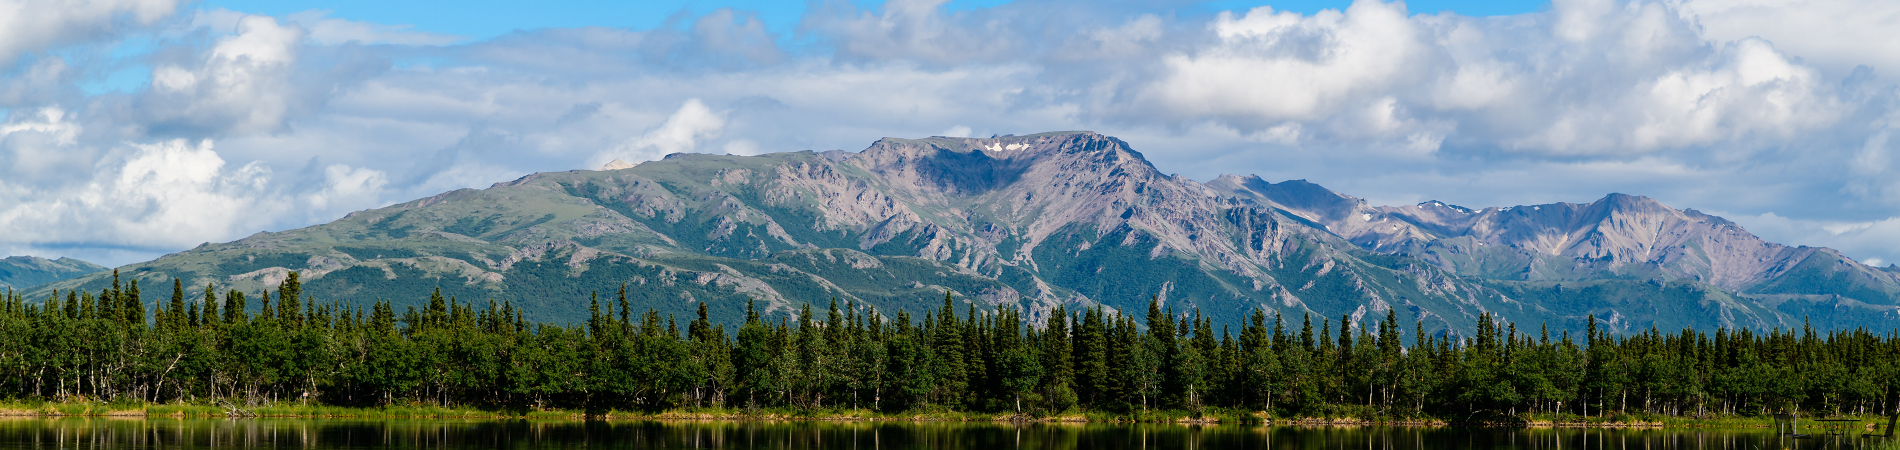 Image for Alaska